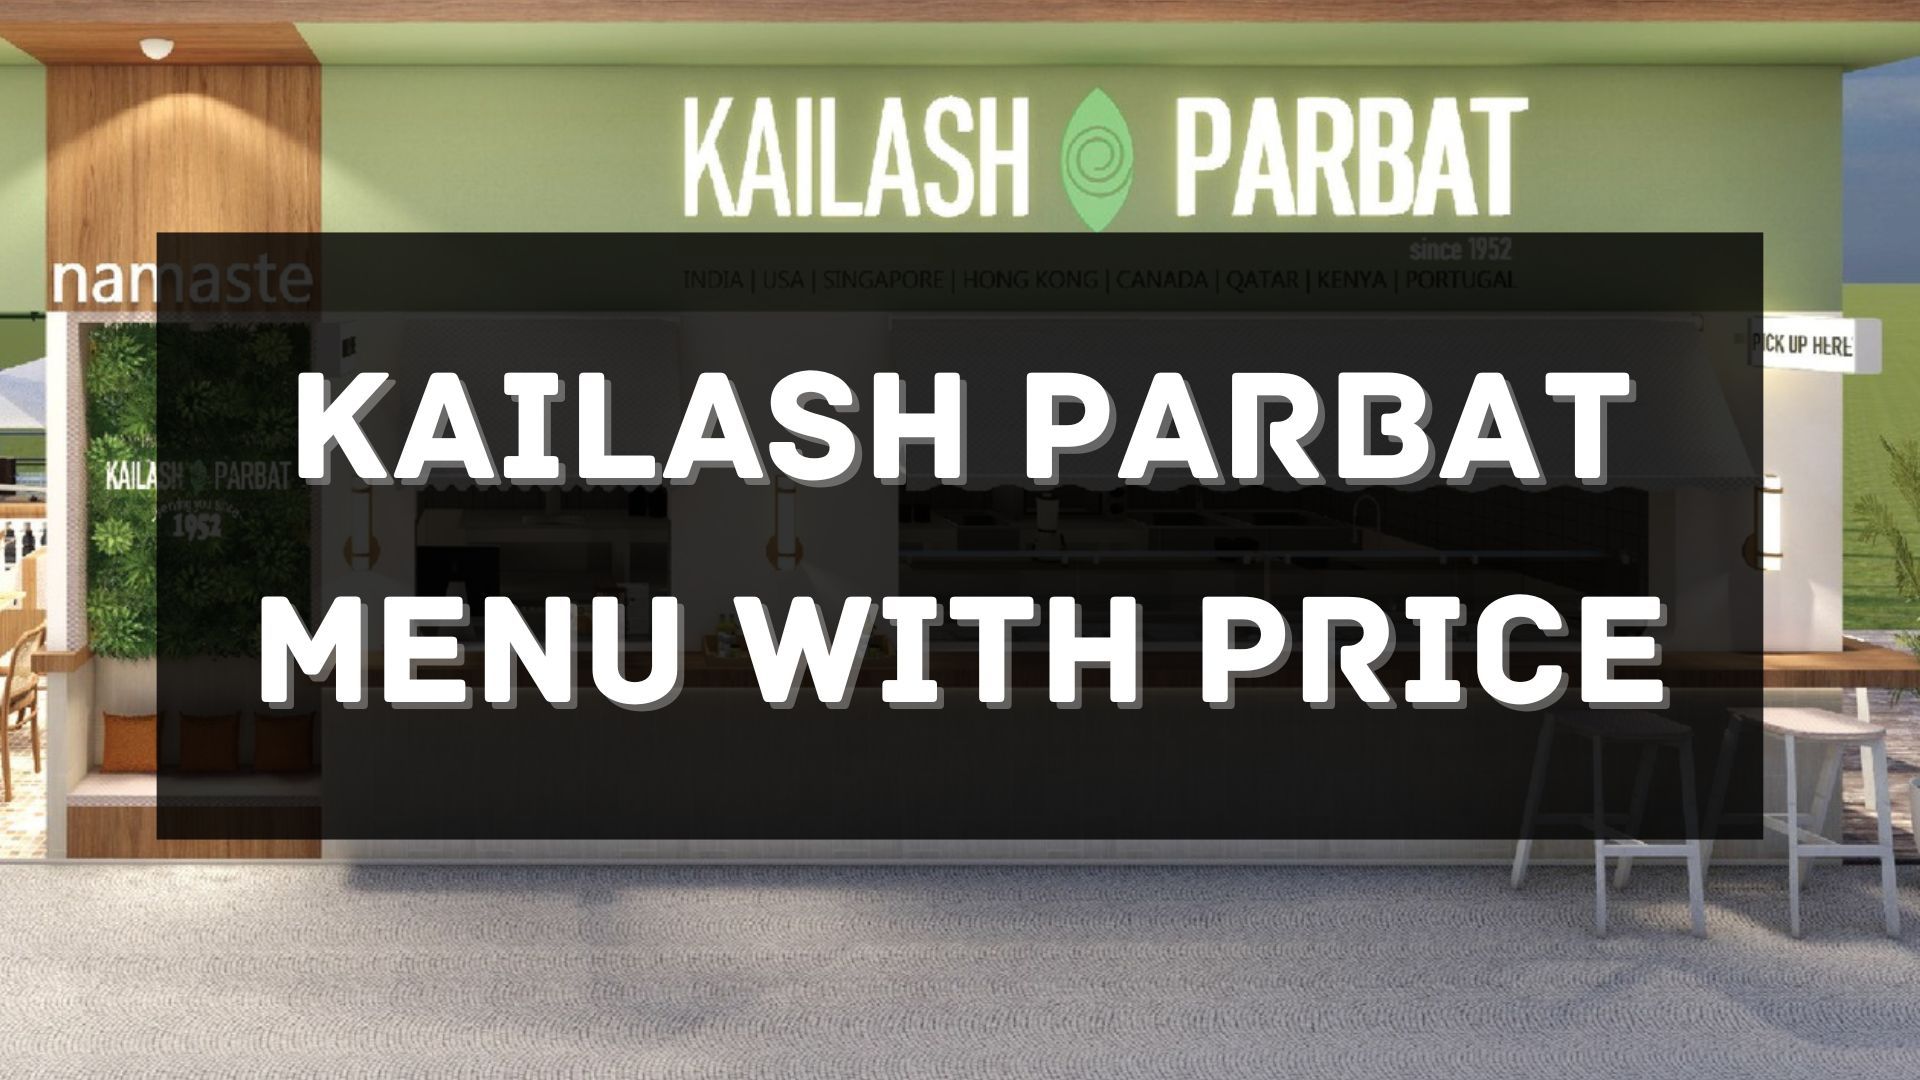 kailash parbat menu prices singapore